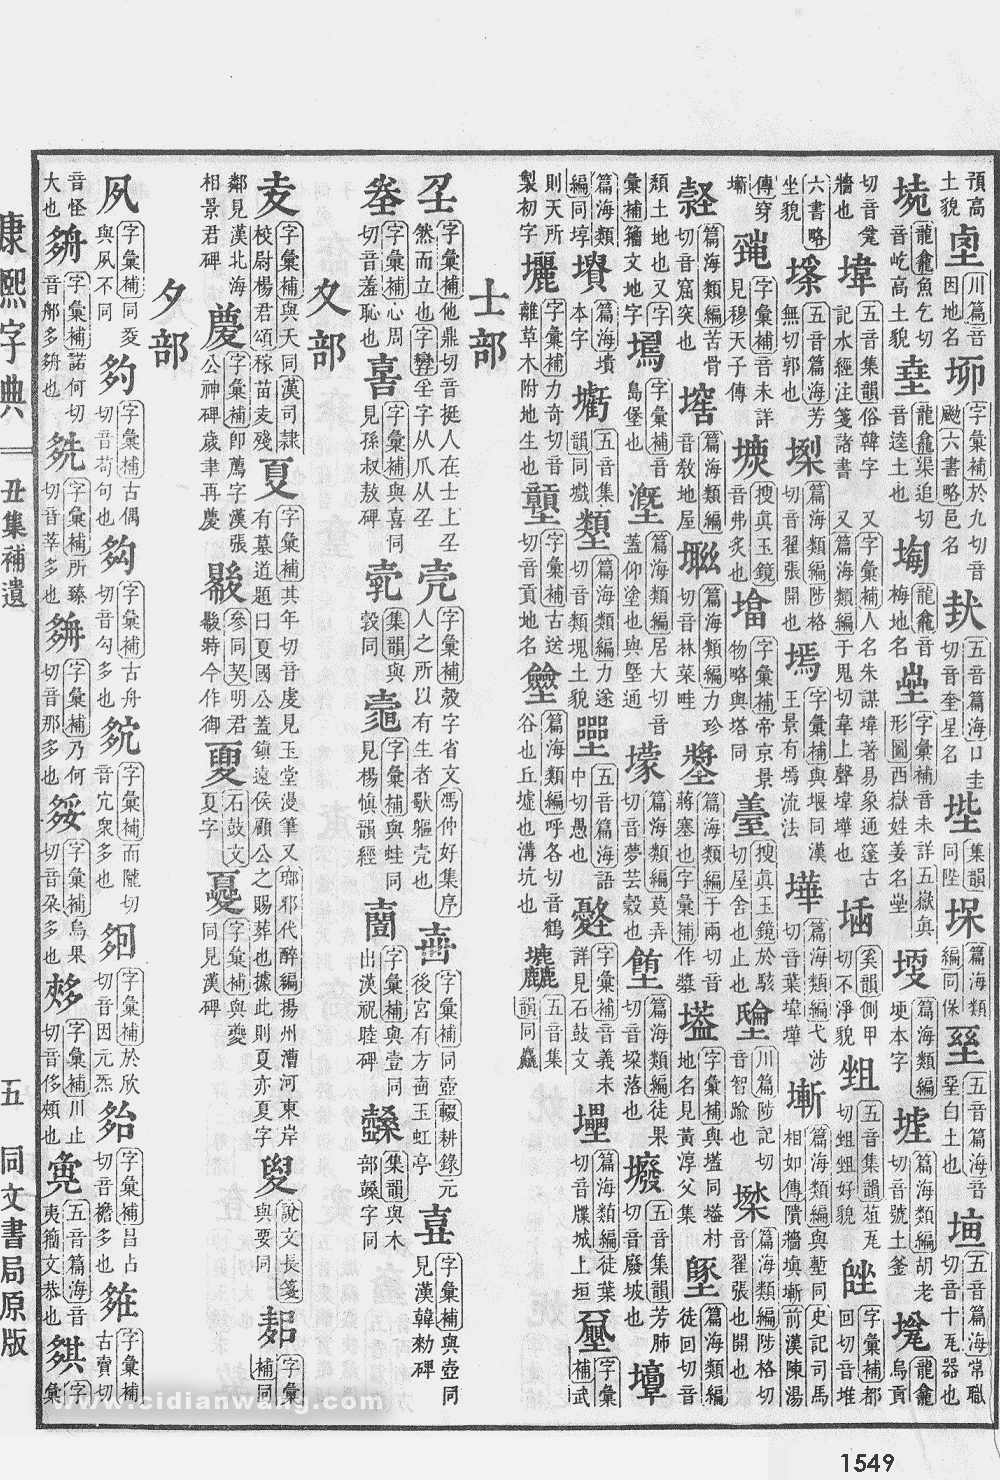 康熙字典掃描版第1549頁